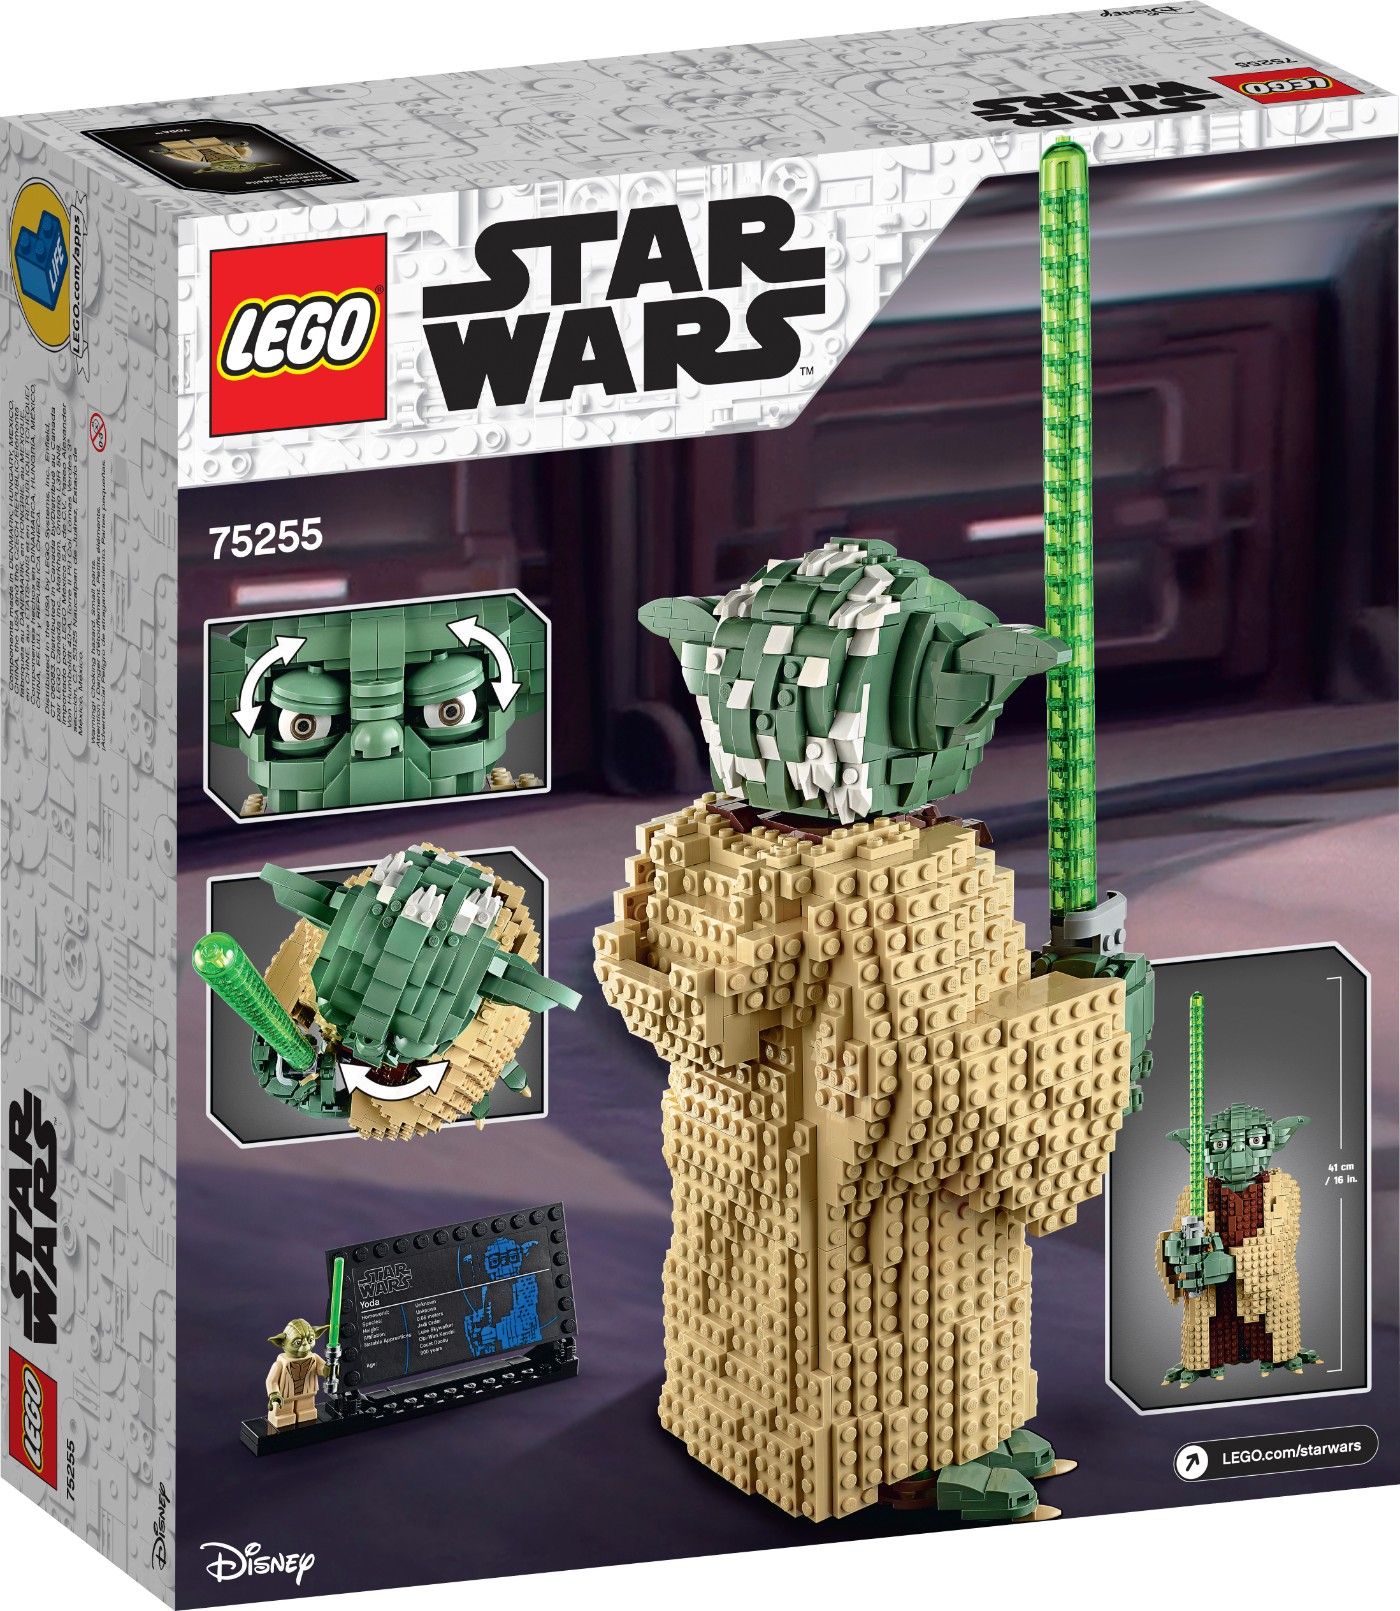 Star Wars Classic Lego Set Yoda